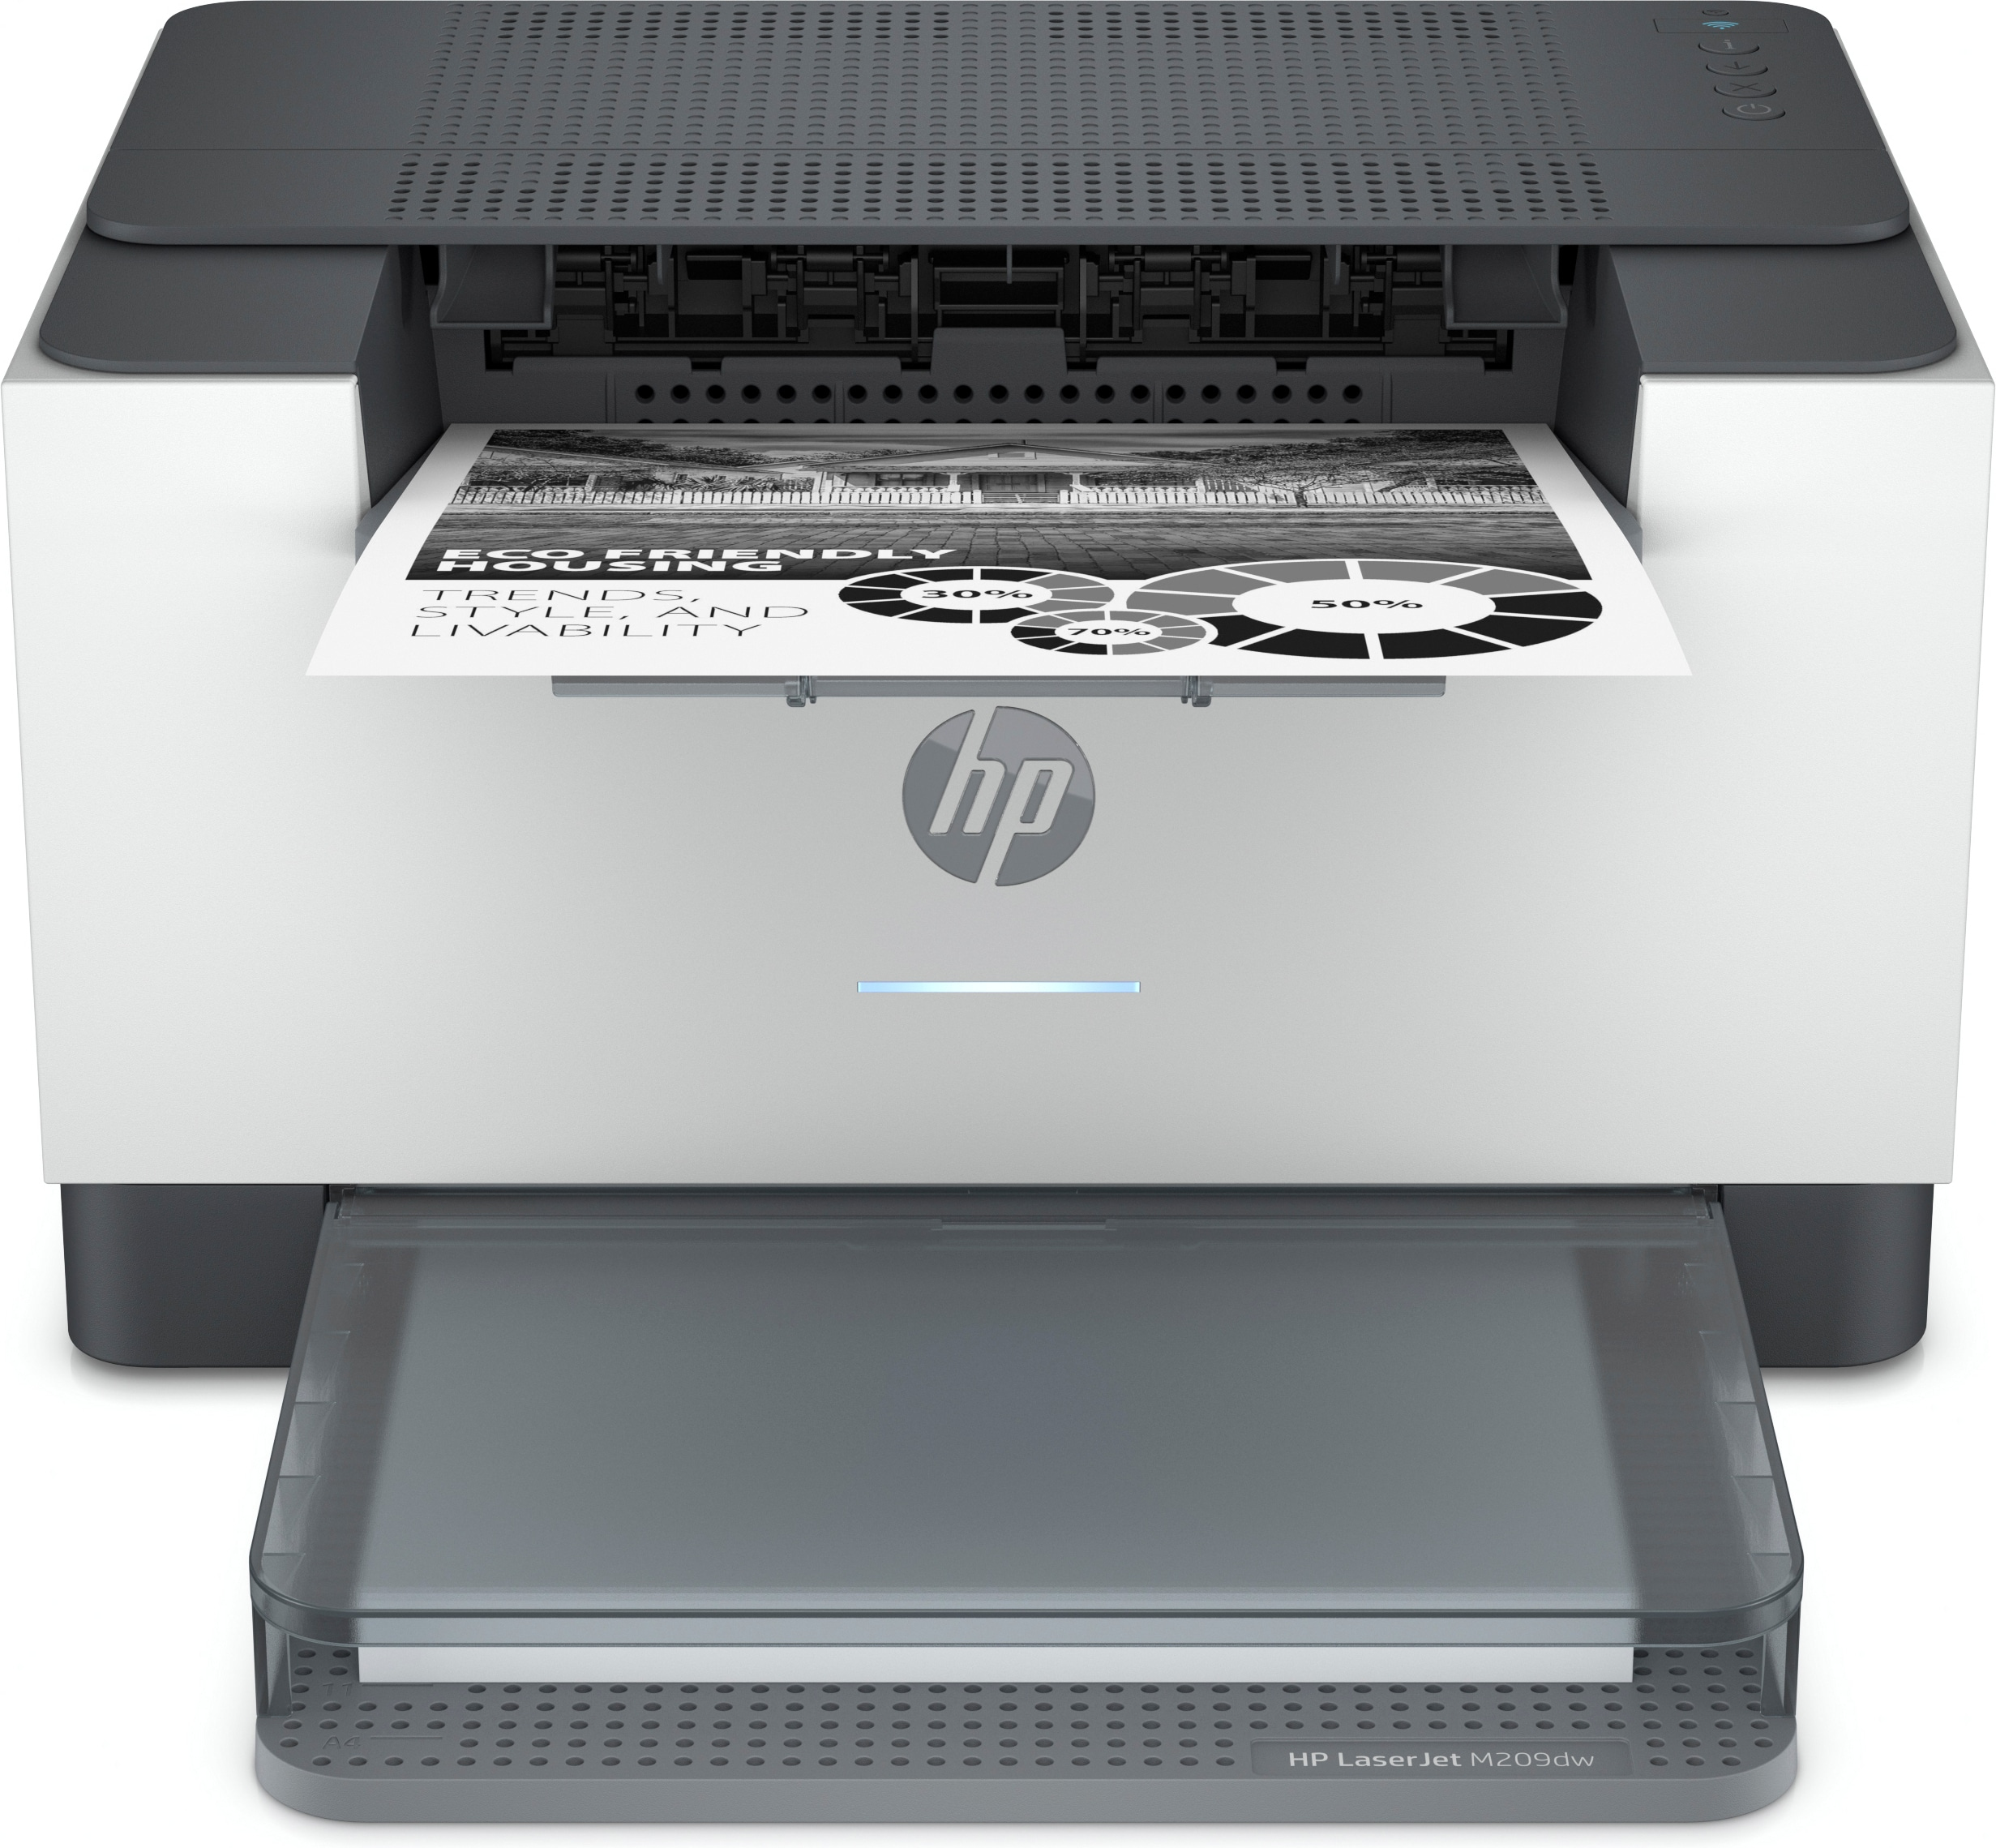 Image of HP LaserJet Stampante M209dw, Bianco e nero, Stampante per Abitazioni e piccoli uffici, Stampa, Stampa fronte/retro; dimensioni compatte; risparmio energetico; Wi-Fi dual band